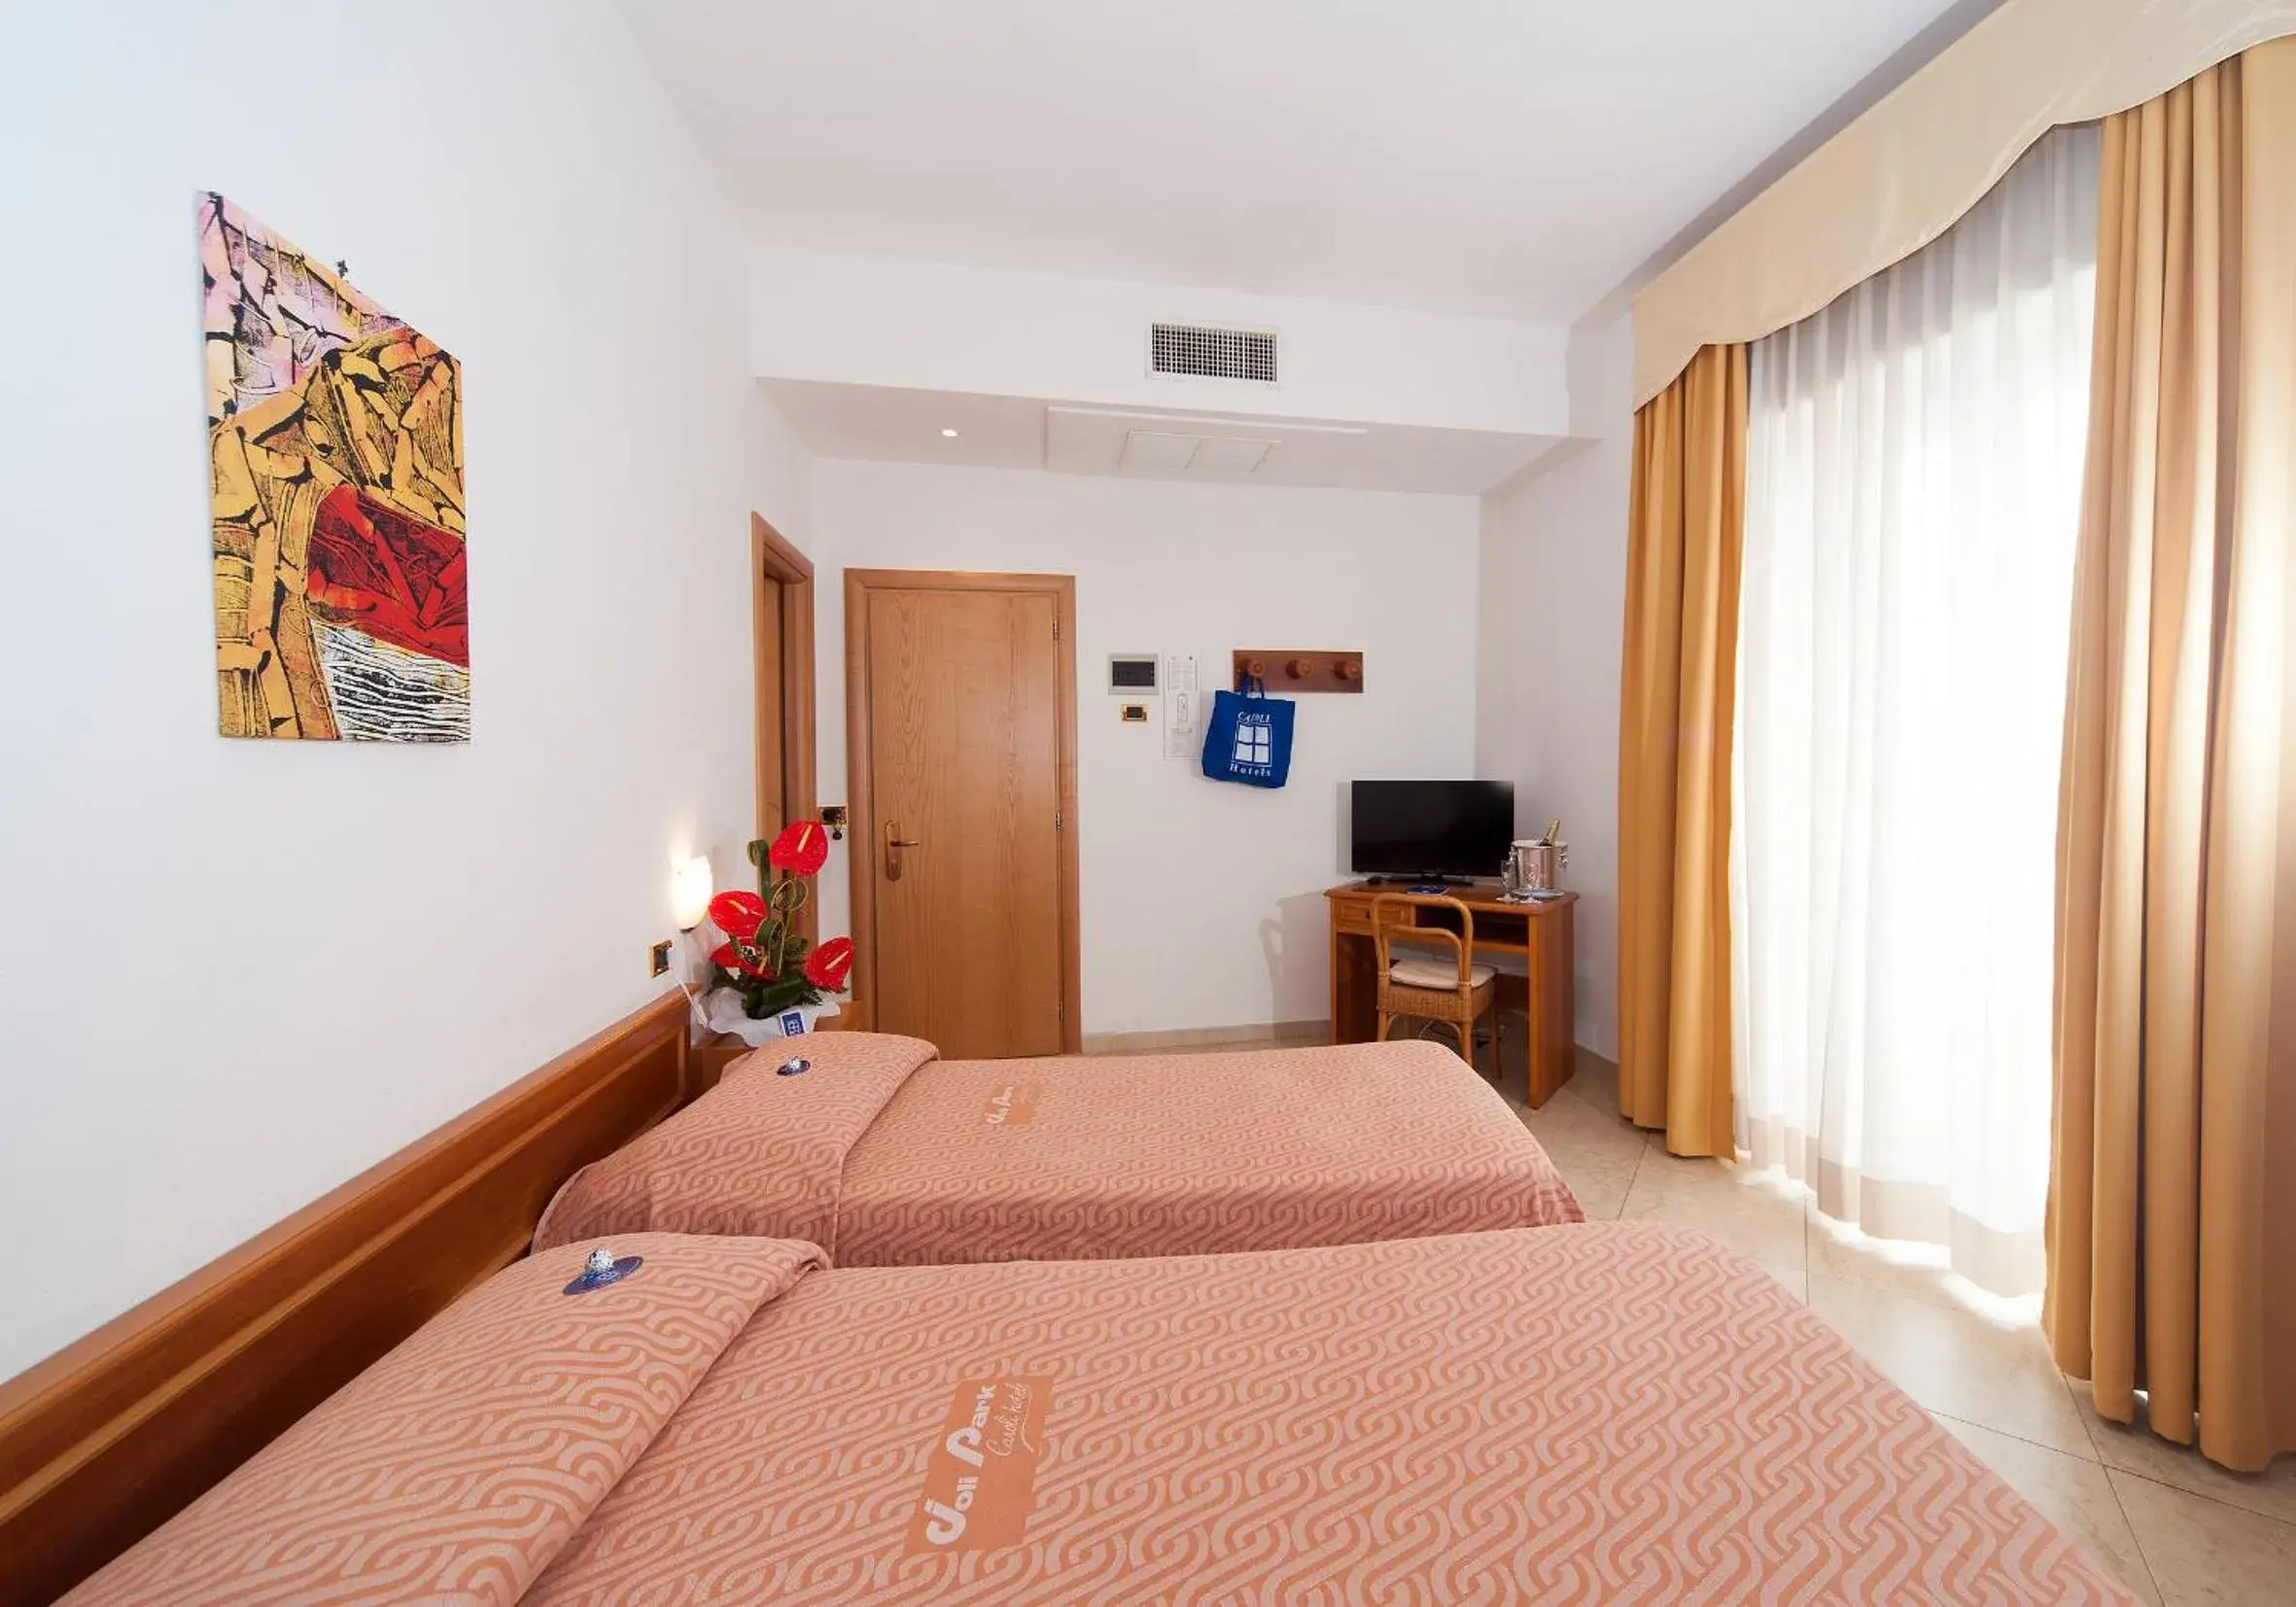 Bed in Joli Park Hotel - Caroli Hotels